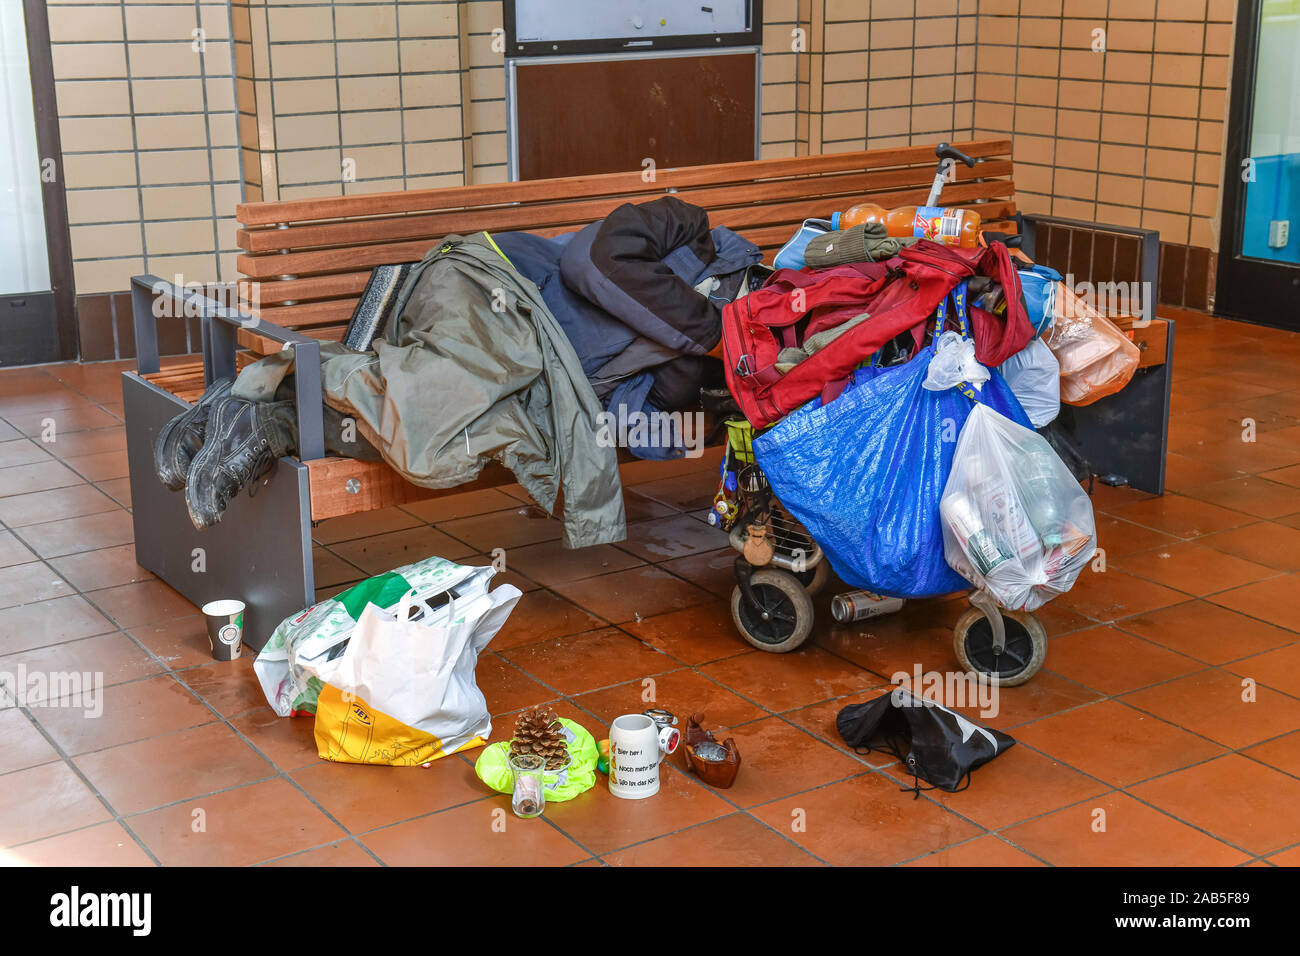 Obdachloser, Bank, Bahnhof Bad Oeynhausen, Nordrhein-Westfalen, Deutschland Stockfoto